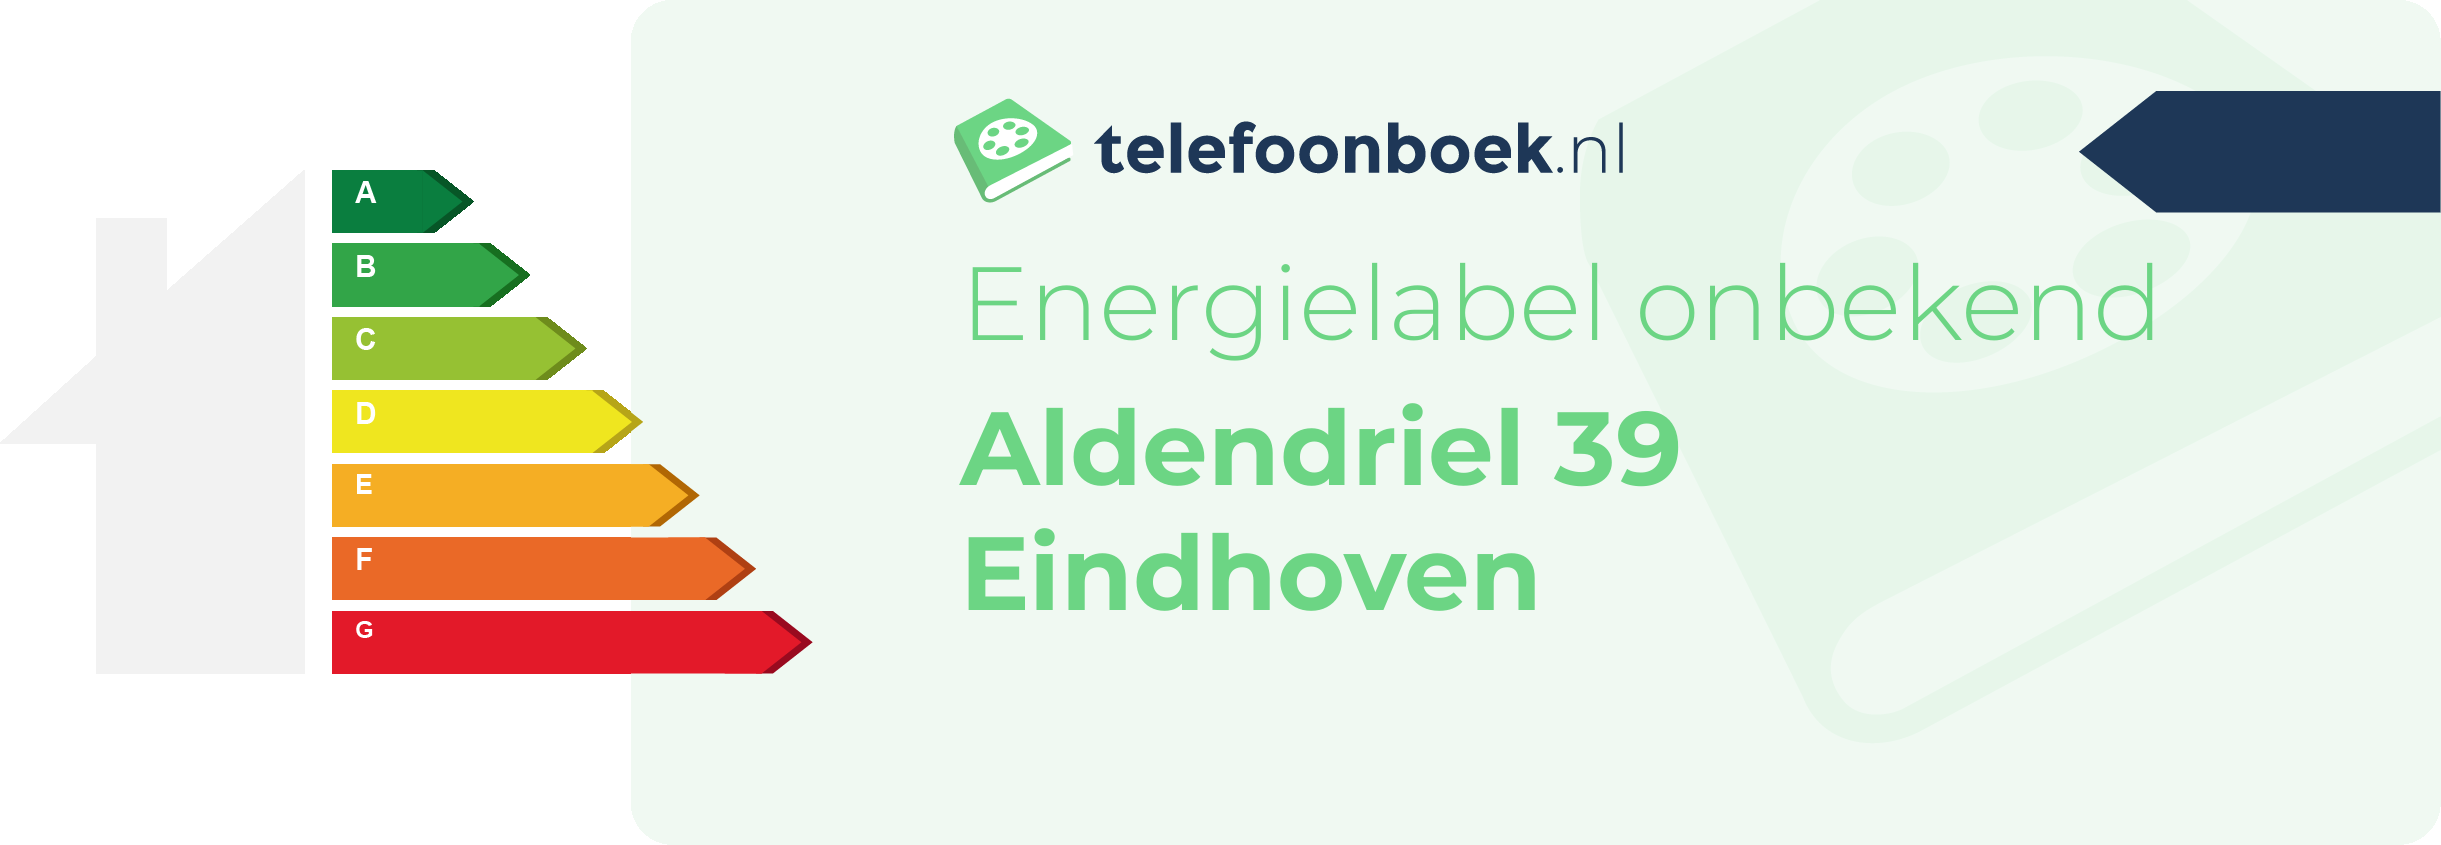 Energielabel Aldendriel 39 Eindhoven